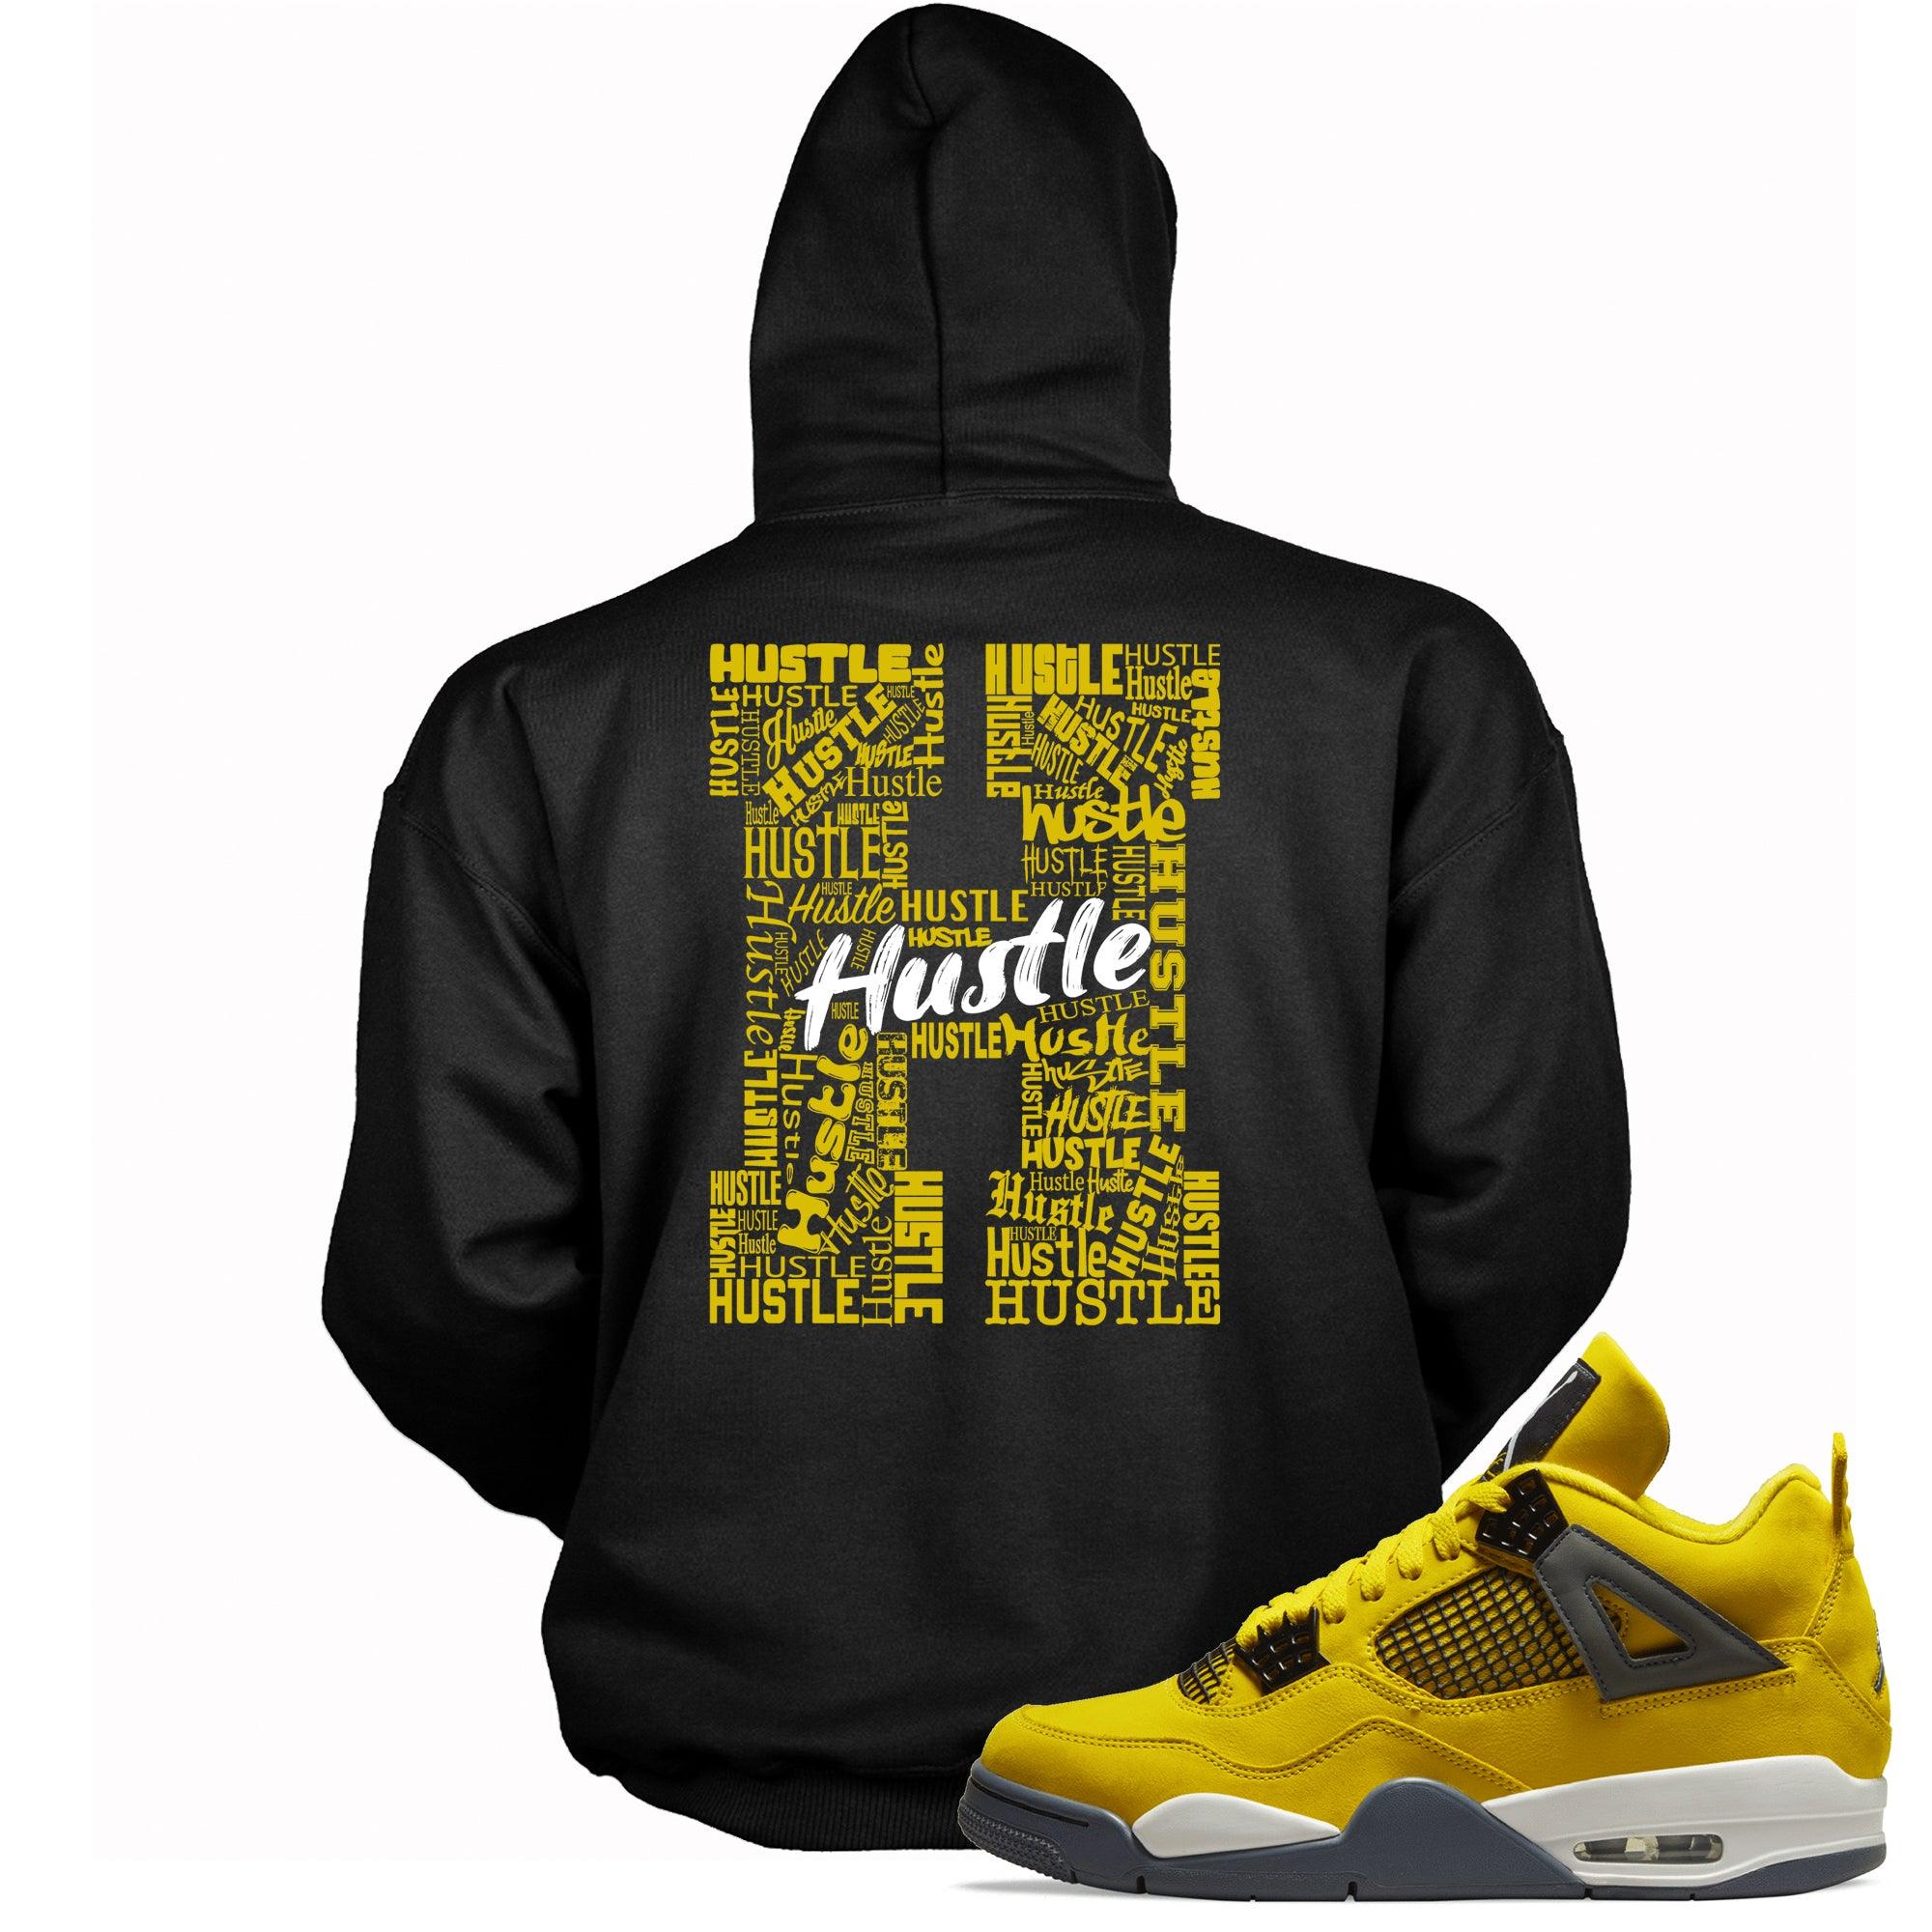 Black H For Hustle Hoodie Jordan 4s Retro Lightning photo